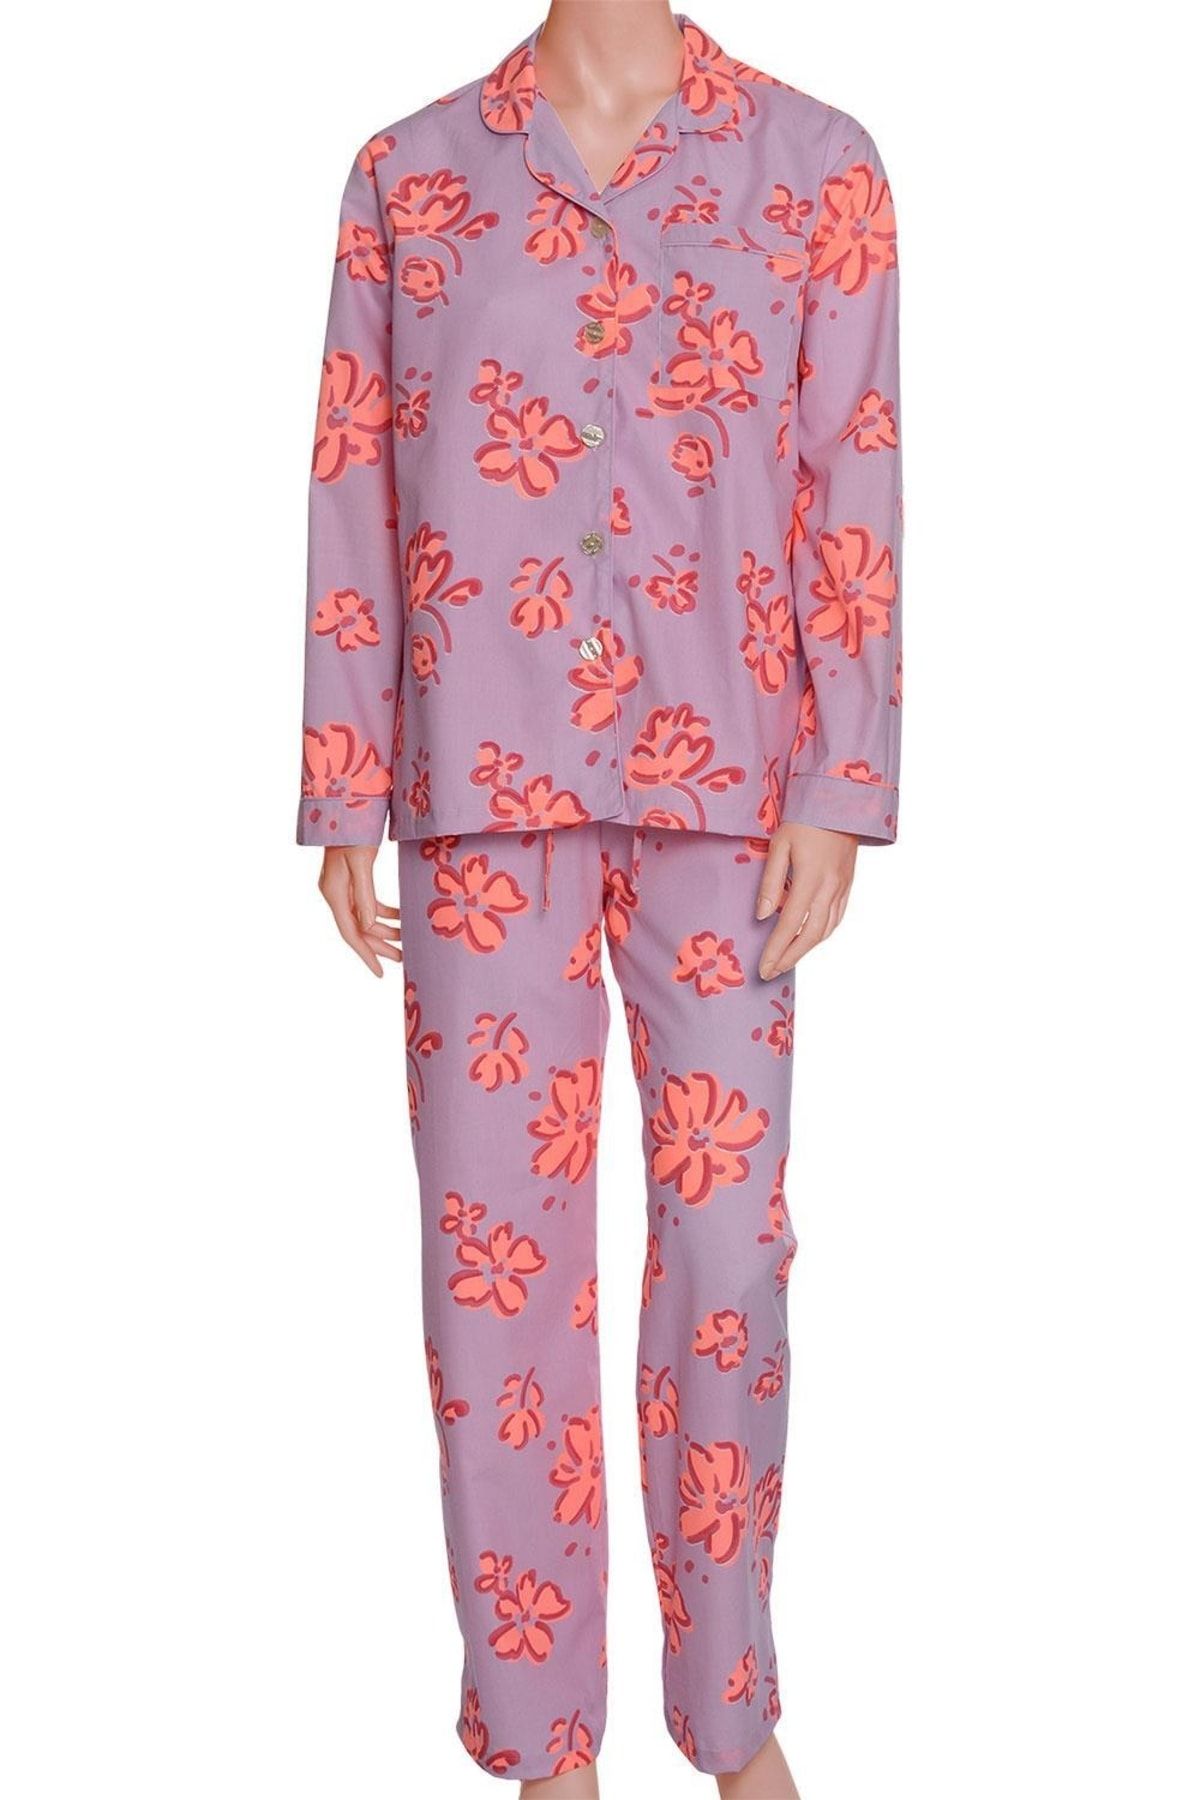 TheDon Poplin Kadın Pijama Takımı Desen 48